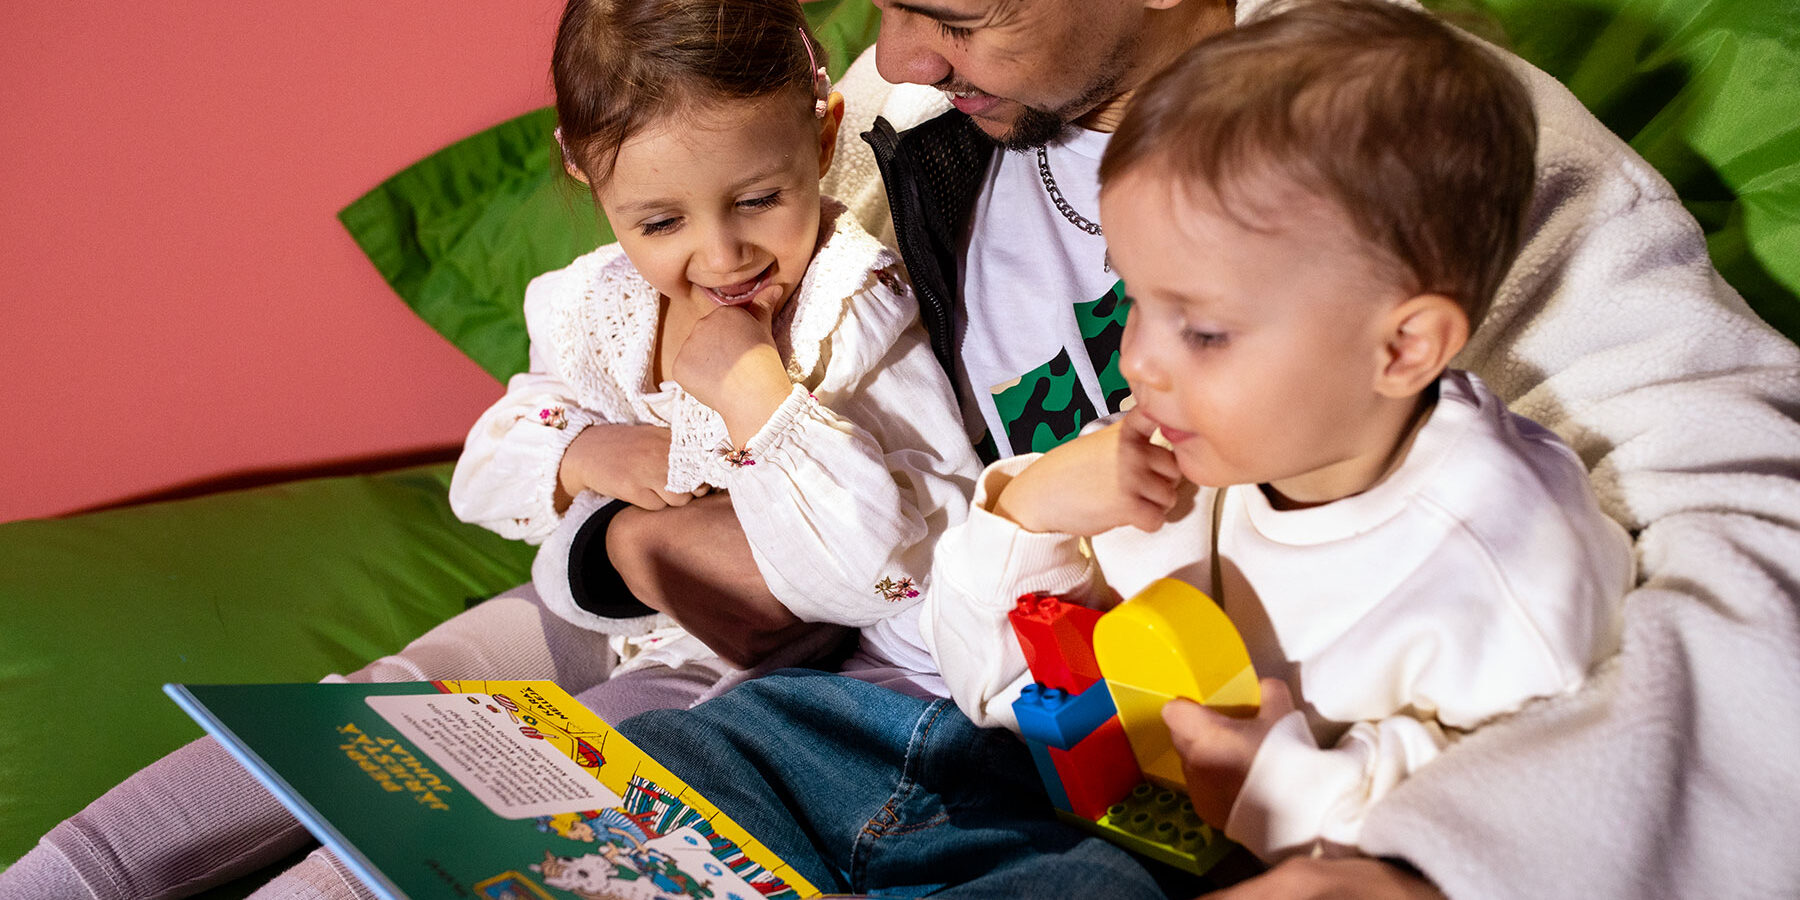 Kaksi pientä lasta lukee kuvakirjaa yhdessä aikuisen kanssa. Lapset istuvat aikuisen sylissä.